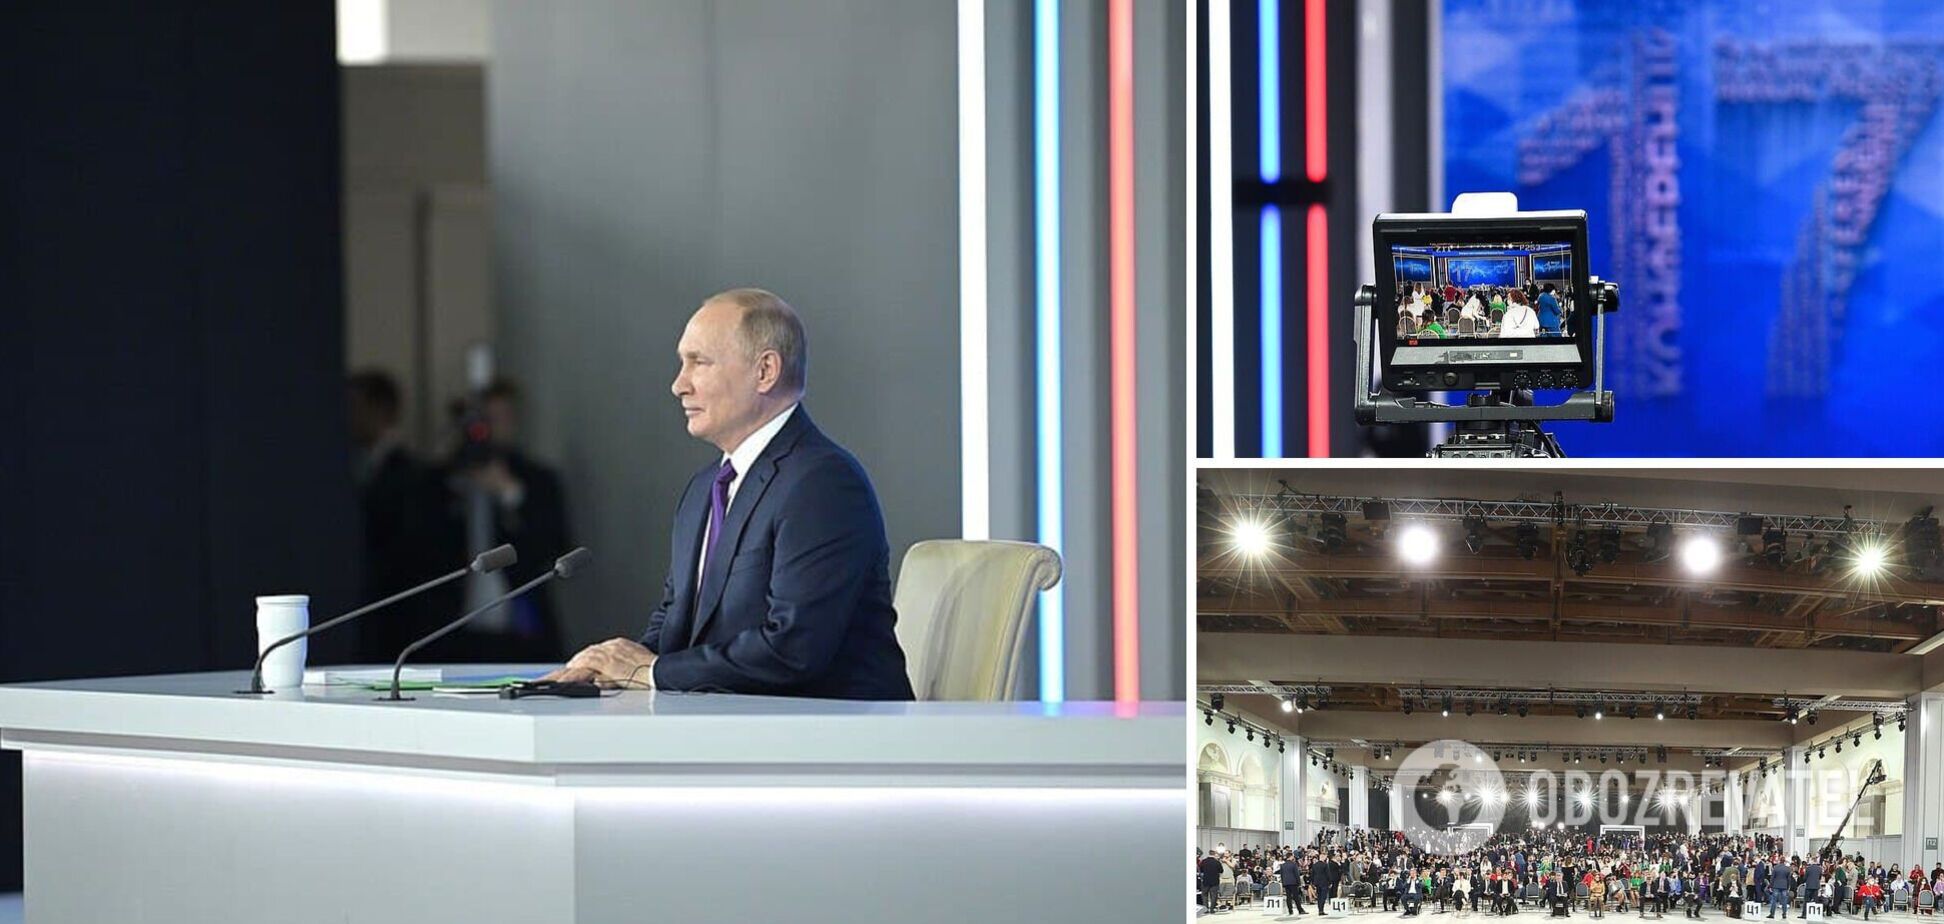 Впервые за 10 лет Путин может отменить итоговую пресс-конференцию